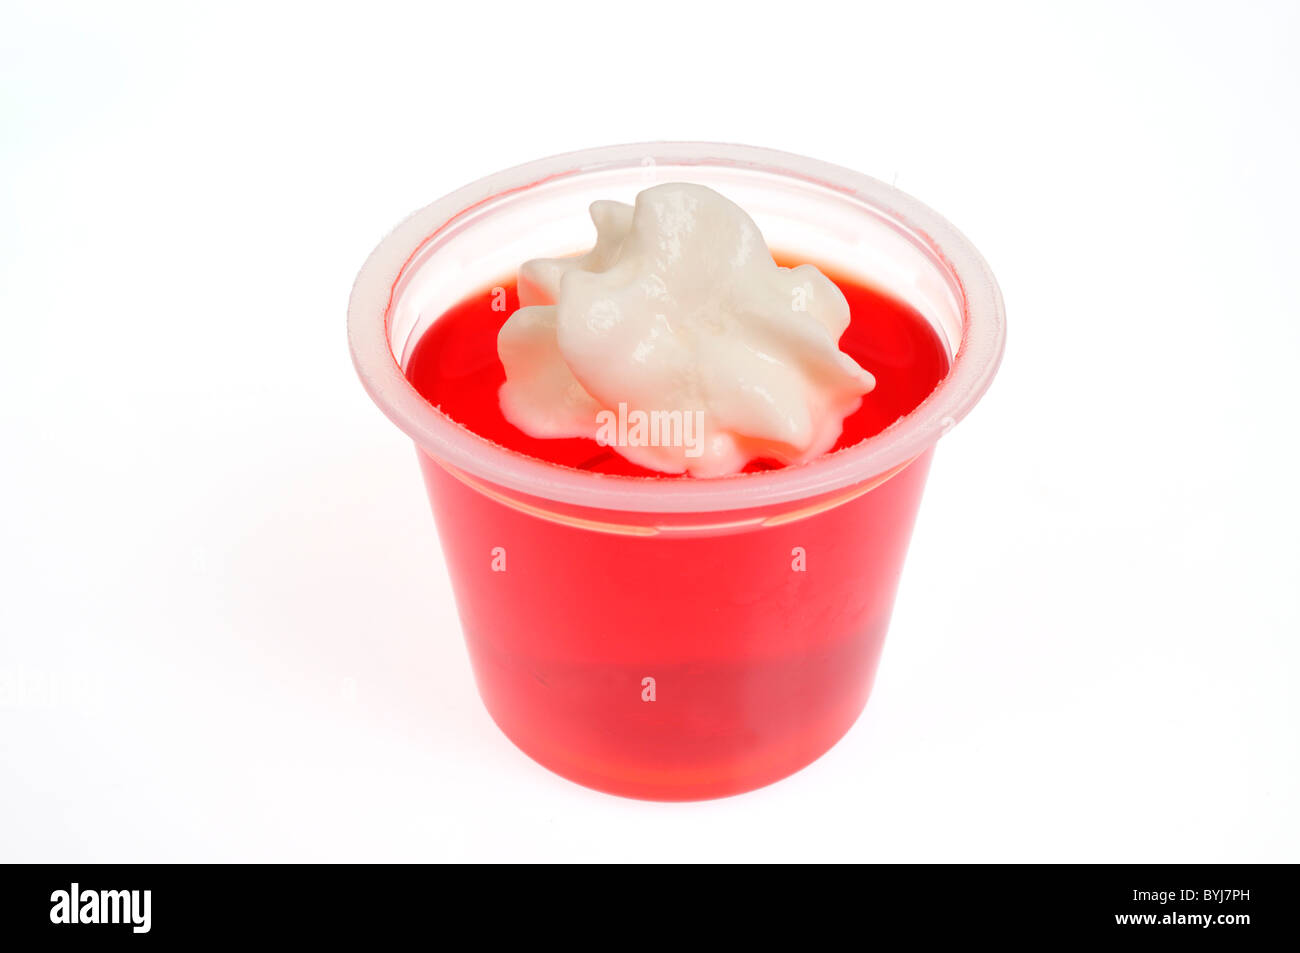 Jell-o pentola con panna montata topping su sfondo bianco, ritaglio. Foto Stock